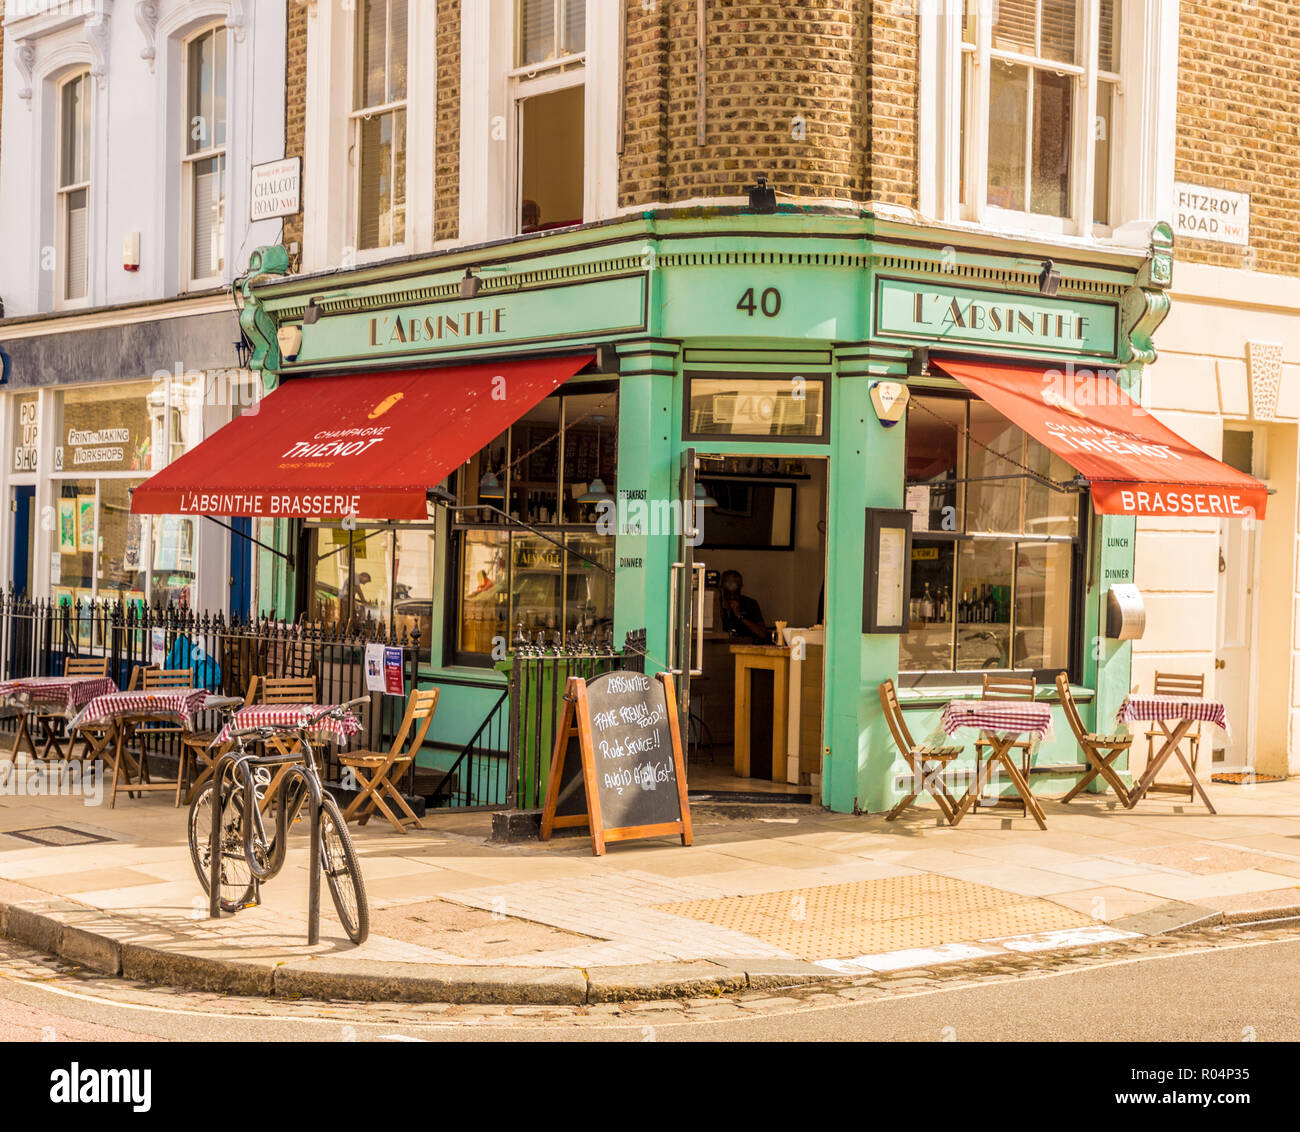 La jolie L' absinthe restaurant et café à Primrose Hill, Londres, Angleterre, Royaume-Uni, Europe Banque D'Images